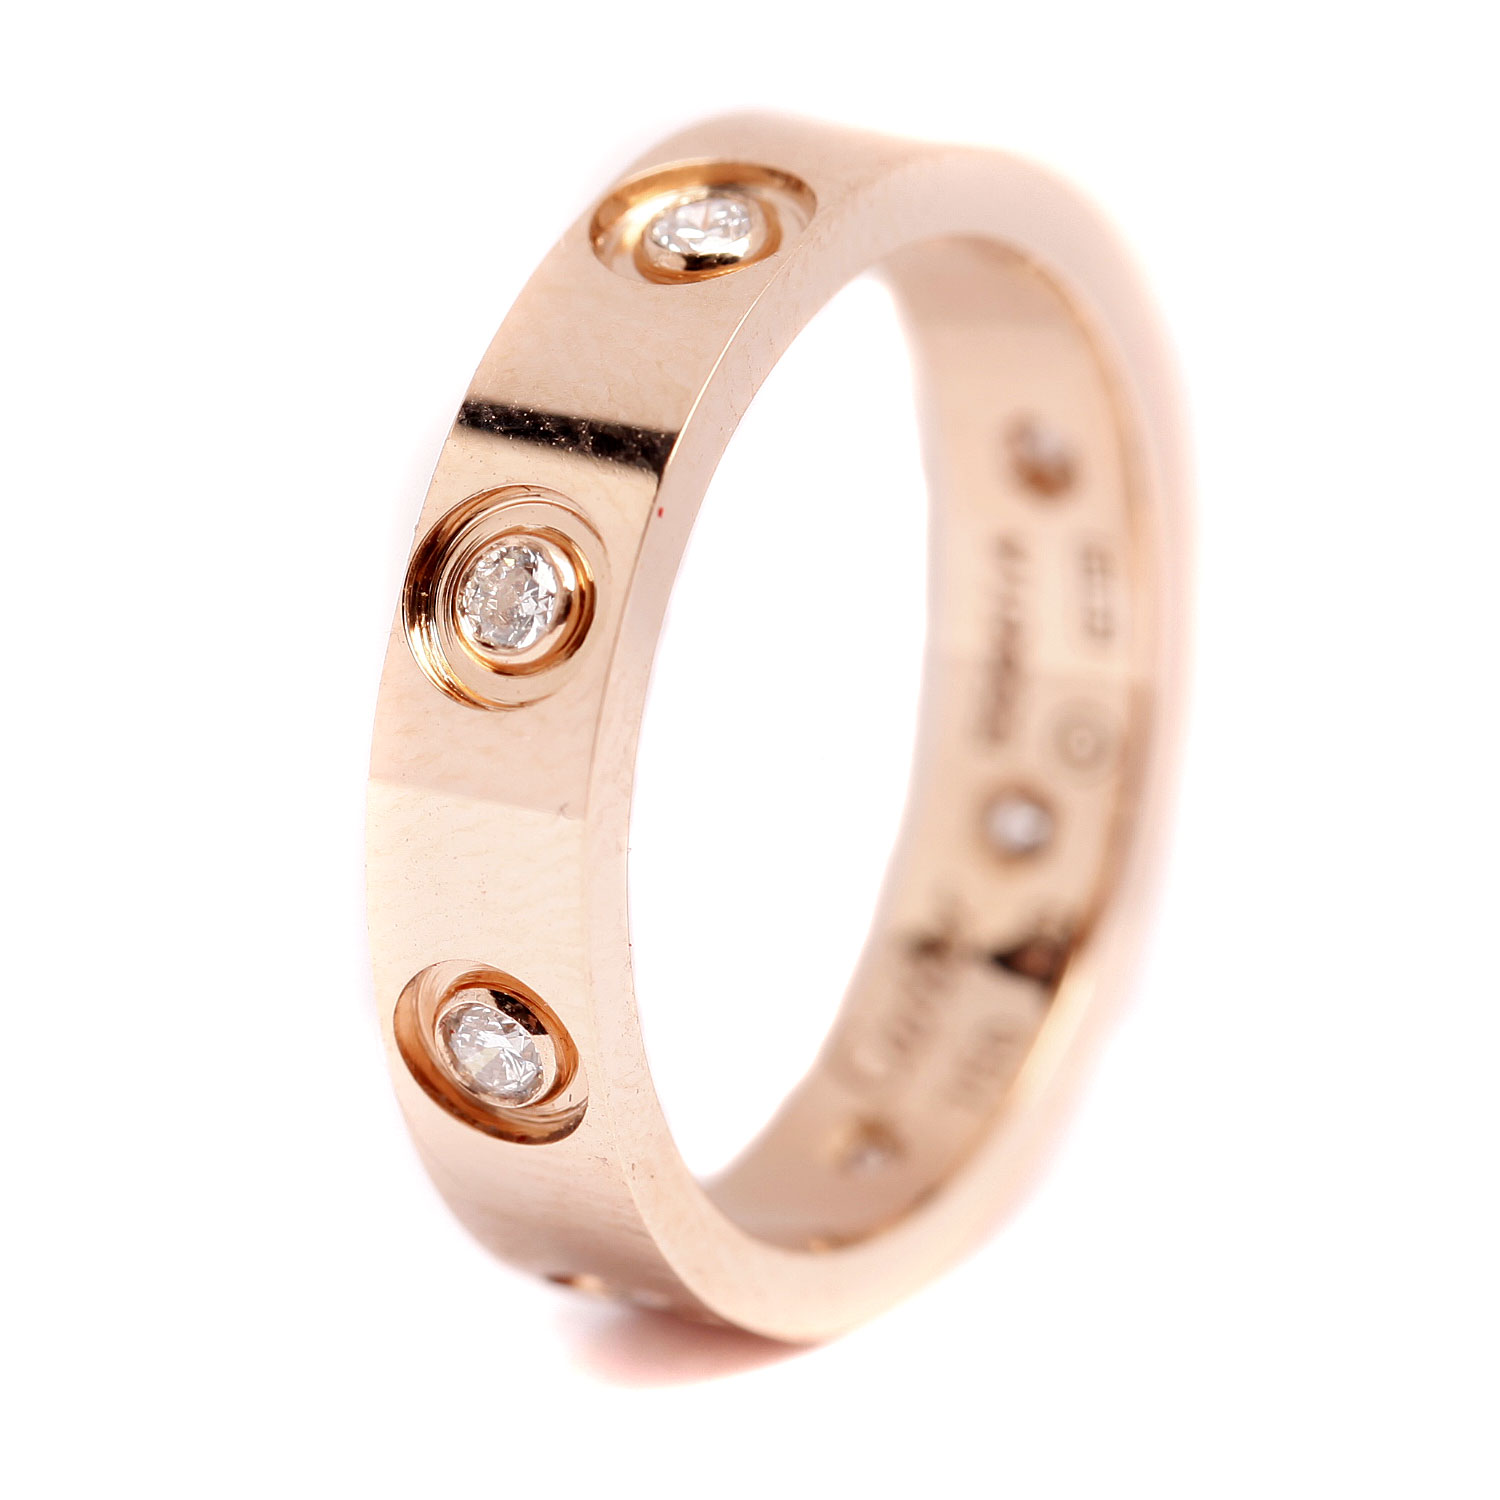 高清图|卡地亚Benares钻石戒指戒指图片1|腕表之家-珠宝